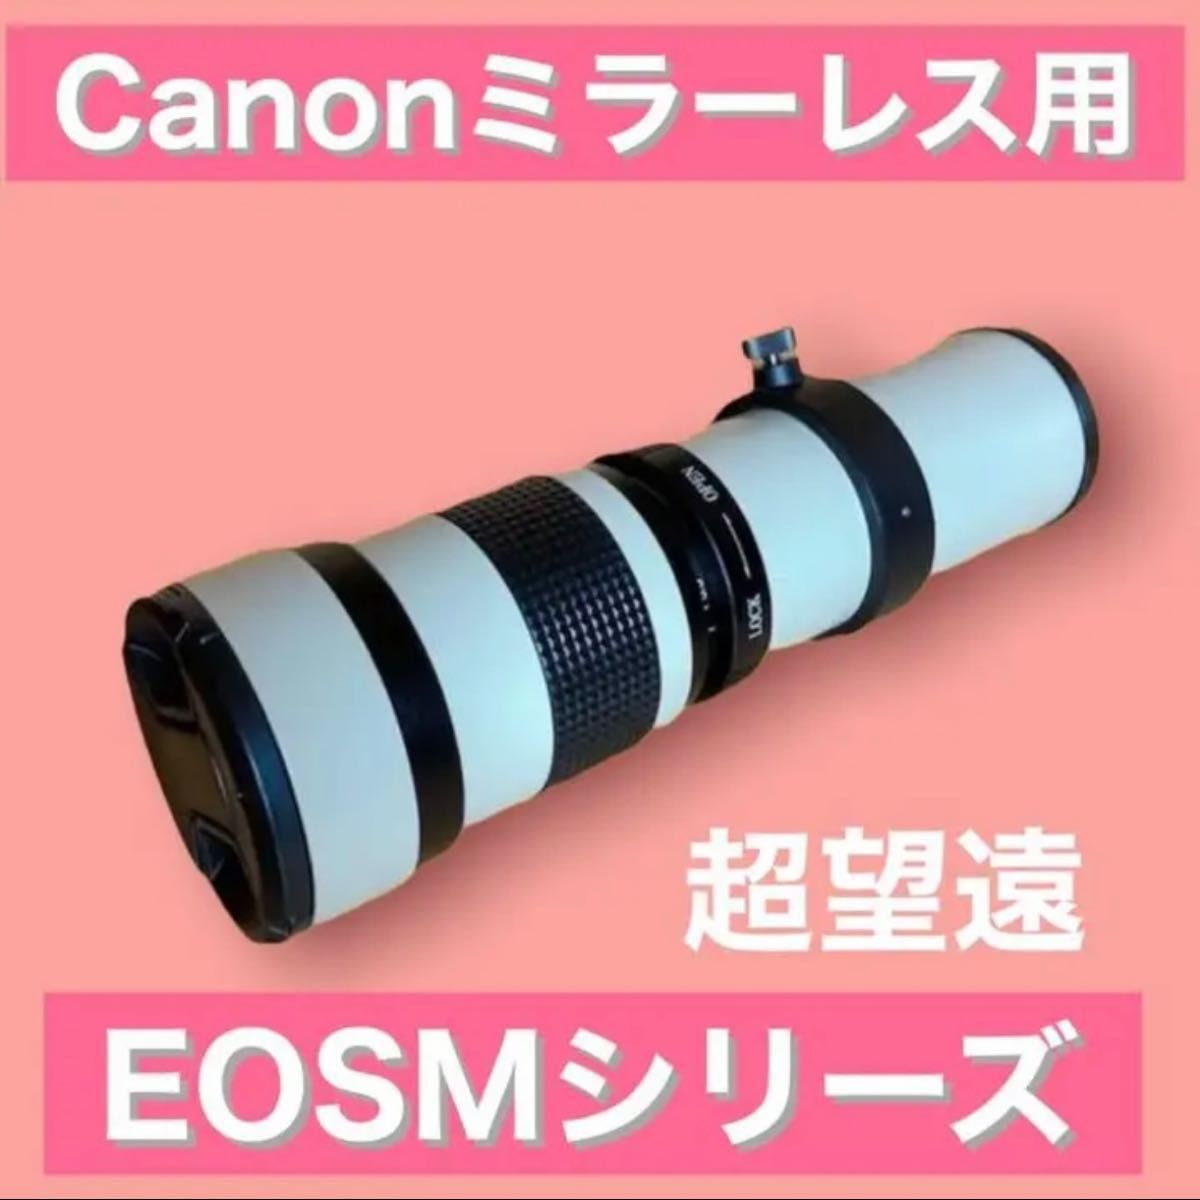 Canonミラーレス用！超望遠レンズ！EOSMシリーズ対応！！ホワイト白色！おすすめ！美品！綺麗！ズームレンズ！びっくり！袋付き！